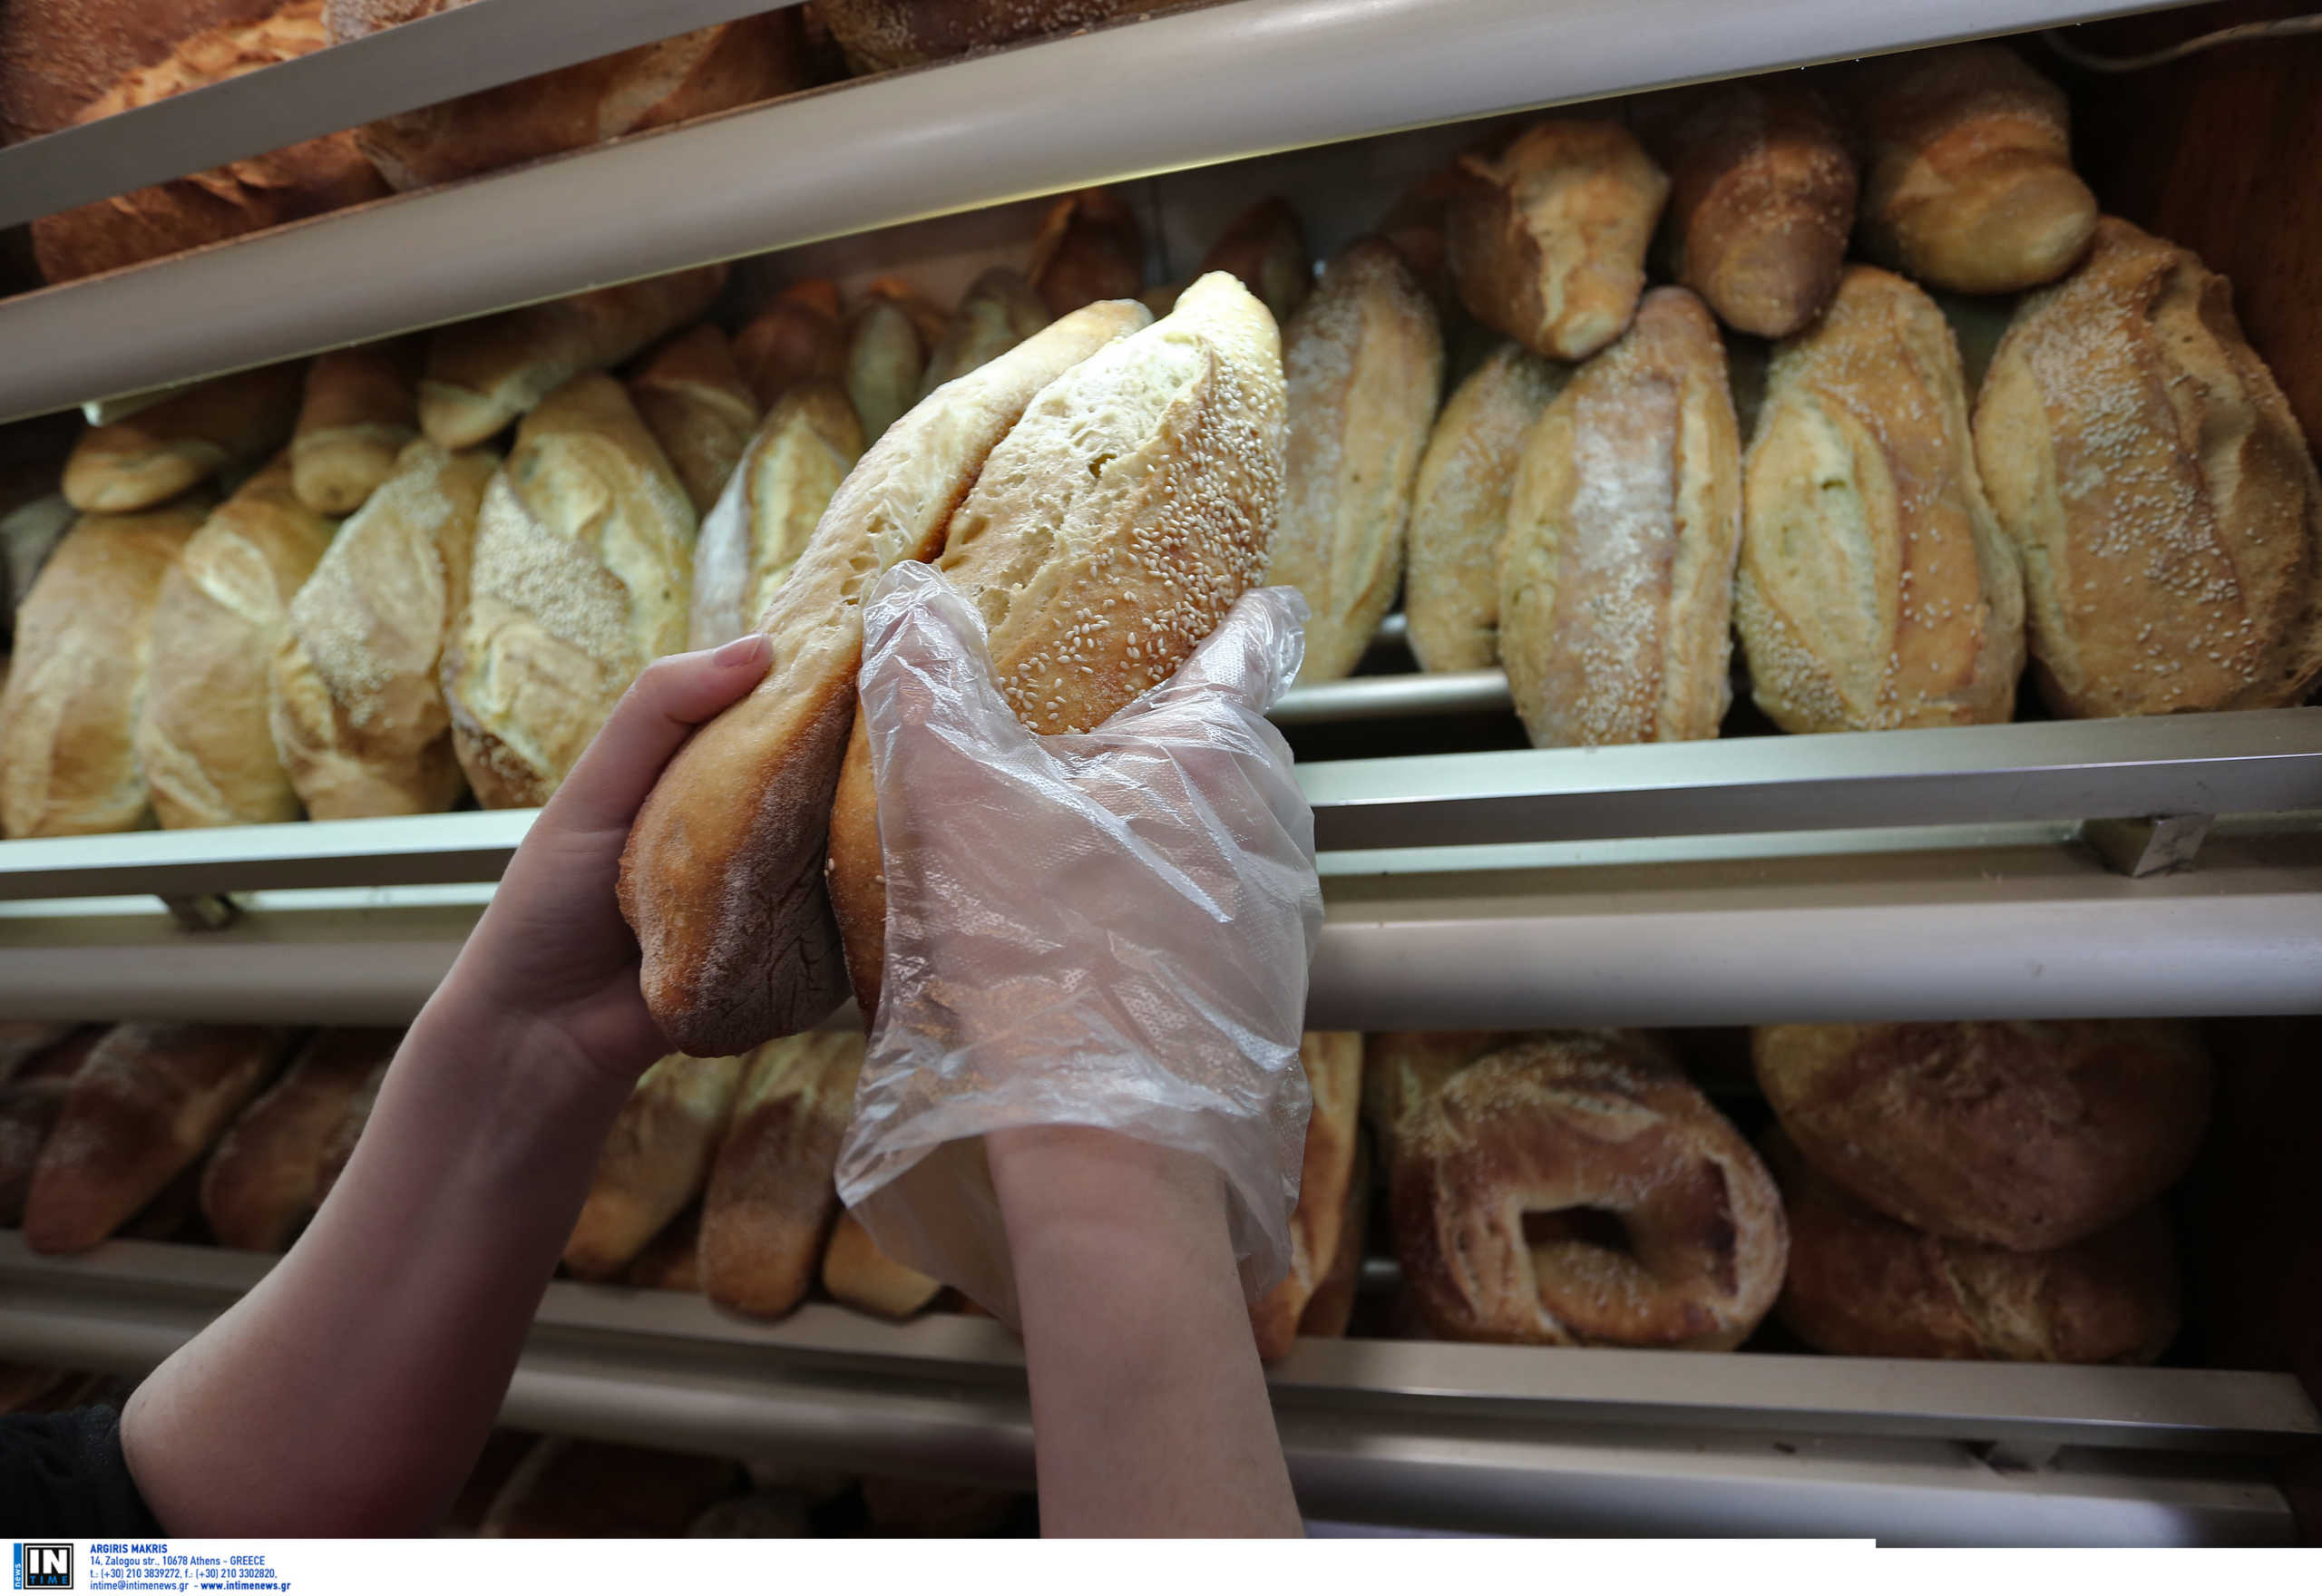 Χωριάτικο ψωμί: Ολοταχώς για νέες αυξήσεις στη Θεσσαλονίκη – Πτώση στις πωλήσεις κατά 20%